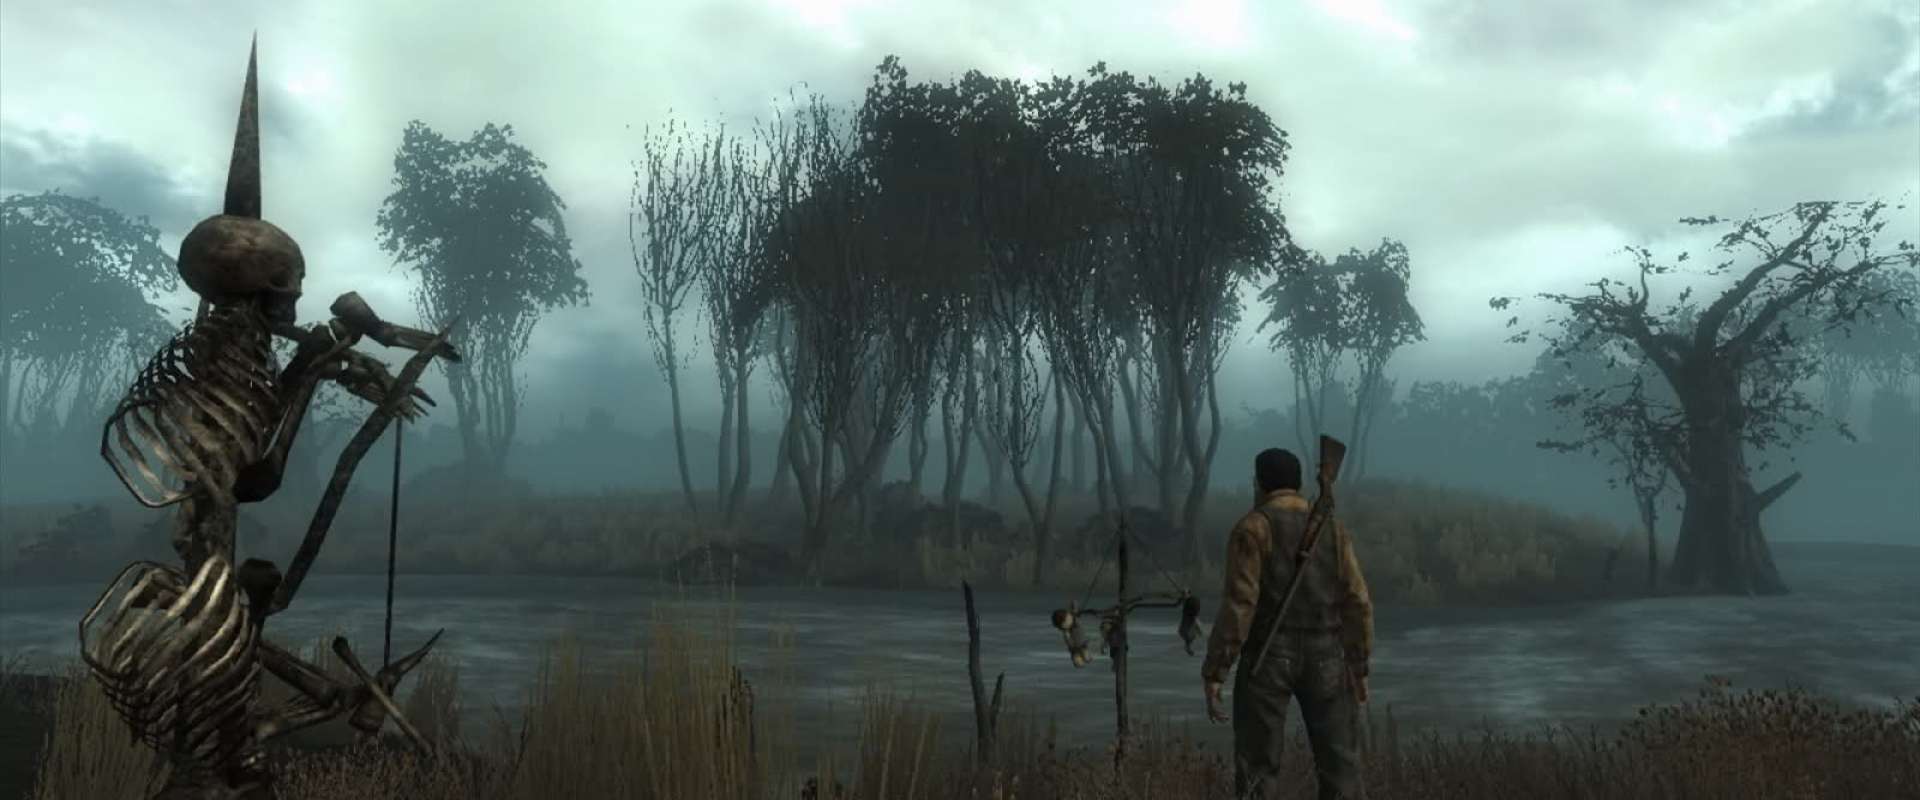 Baixar Tradução do Fallout 3 – PC [PT-BR] - Fallout 3 - Tribo Gamer